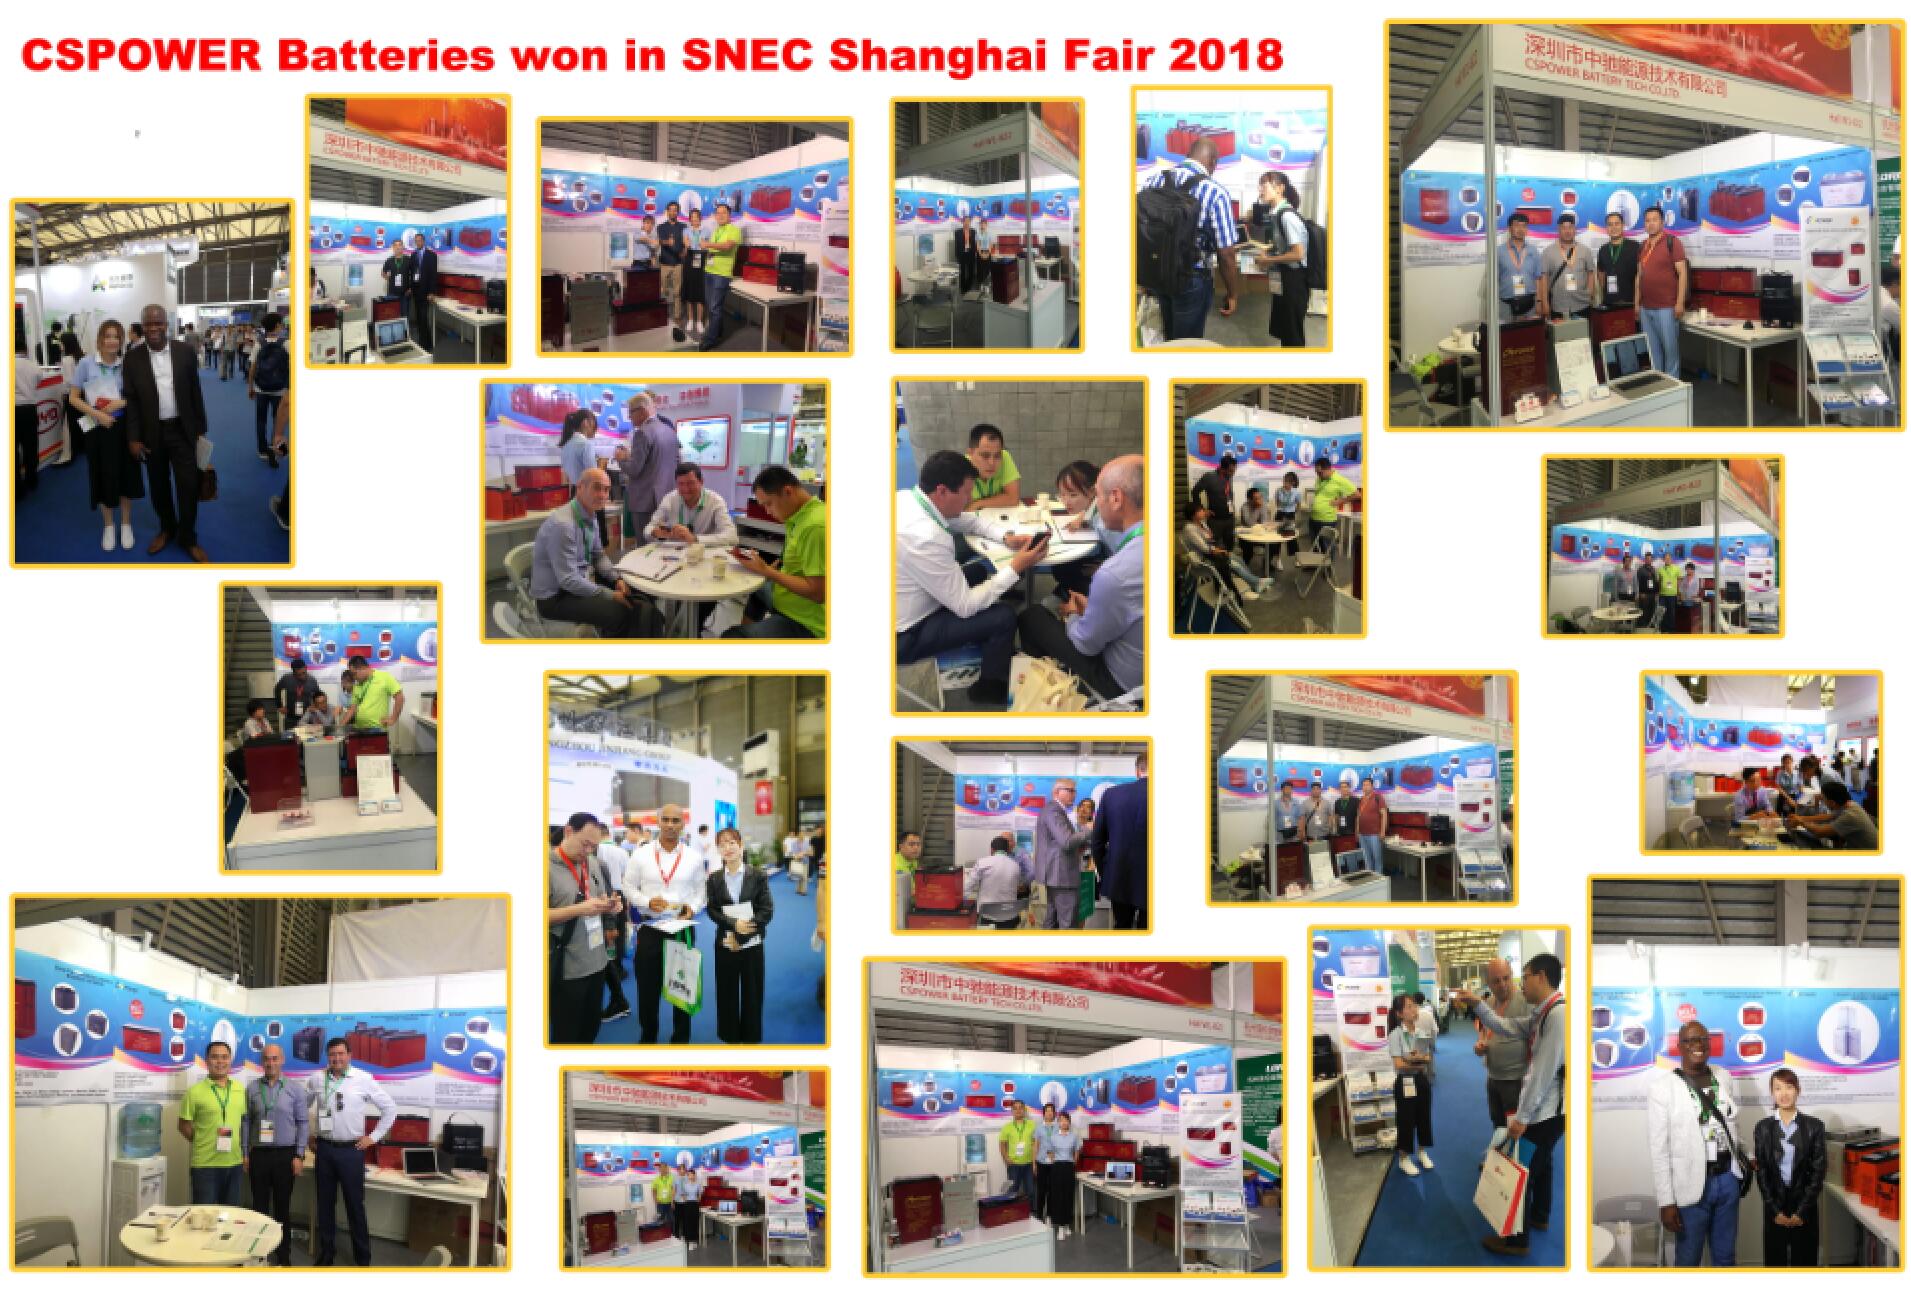 Na prilepljeni profesionalni solarni razstavi SNEC, ki se je udeležila v Šanghaju in se je končala 30. maja, so baterije CSPOWER dosegle velik uspeh in številne cenjene stranke